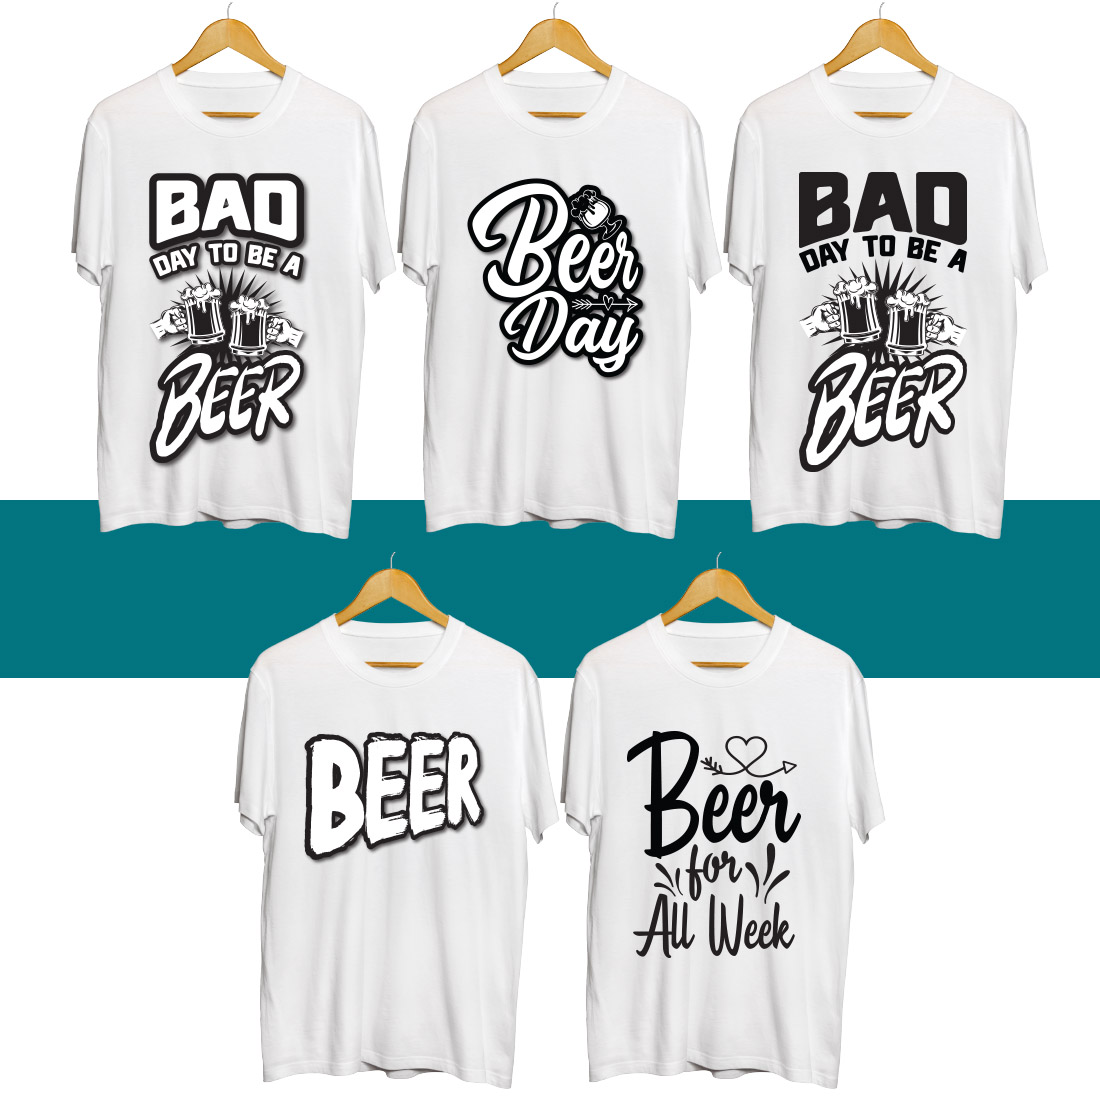 Beer SVG T Shirt Designs Bundle cover image.